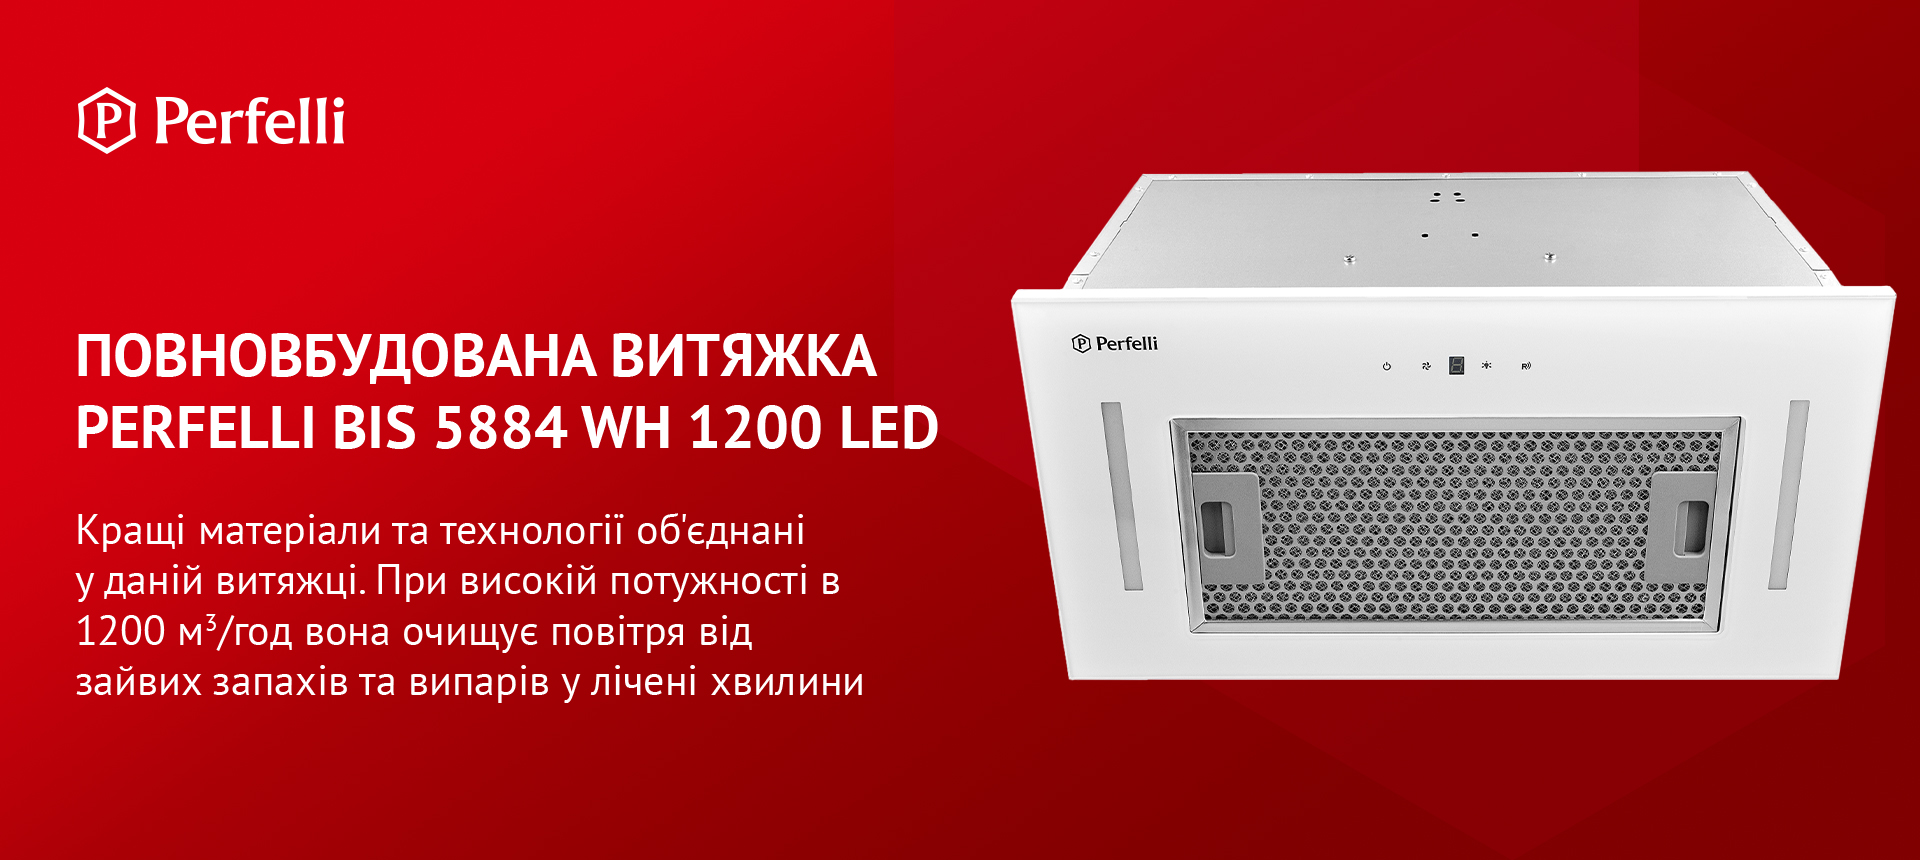 Perfelli BIS 5884 WH 1200 LED в магазине в Киеве - фото 10